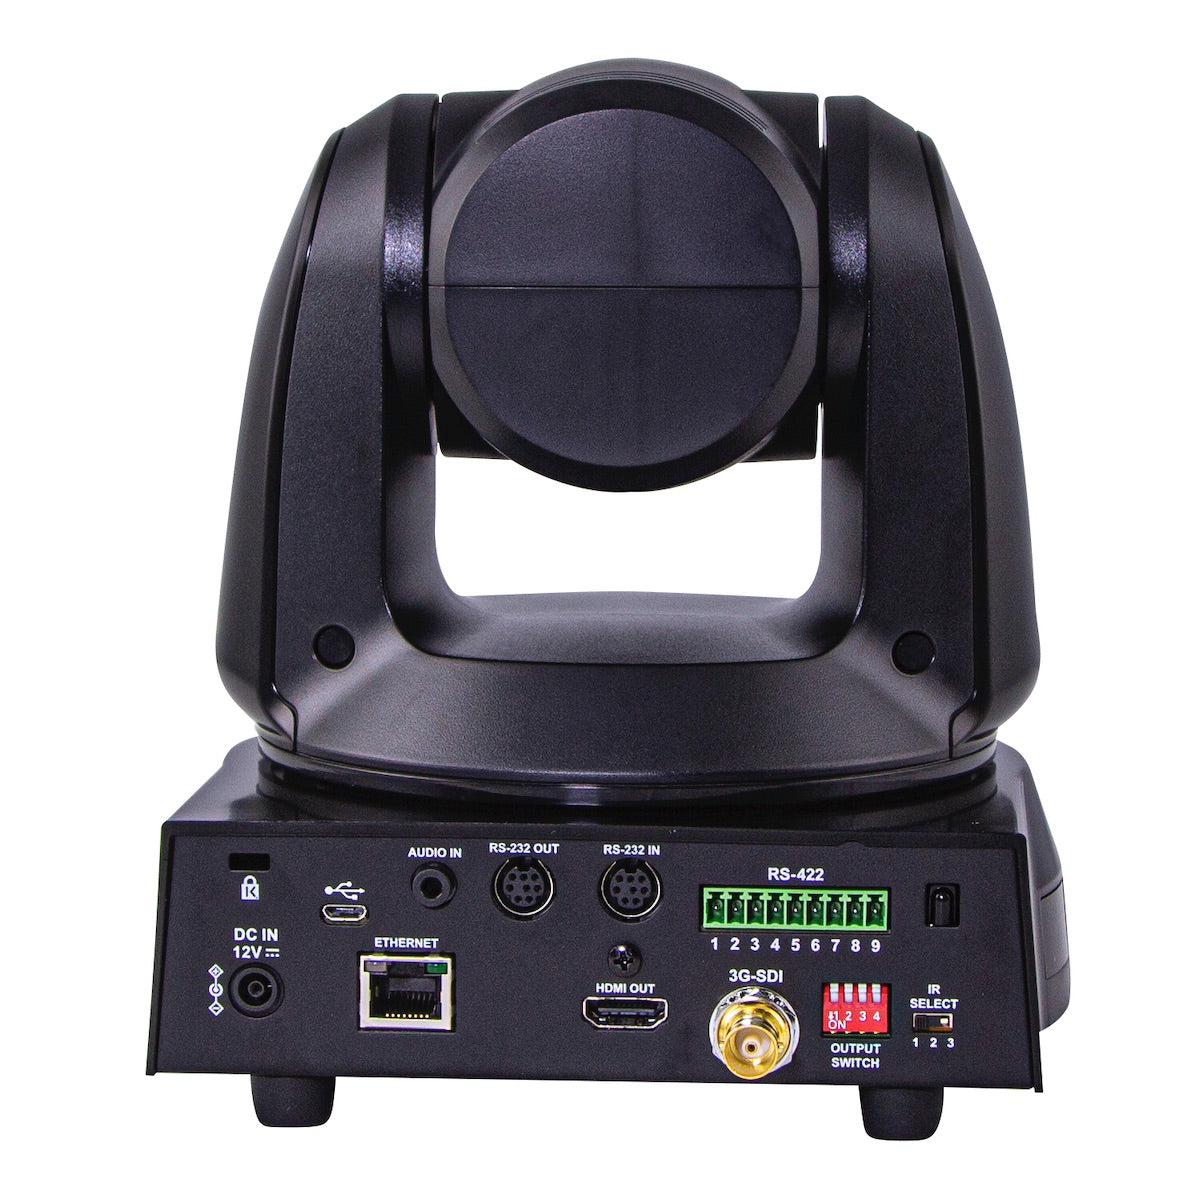 Marshall CV620-TBI - 20x AI Auto-Tracking PTZ Camera, rear